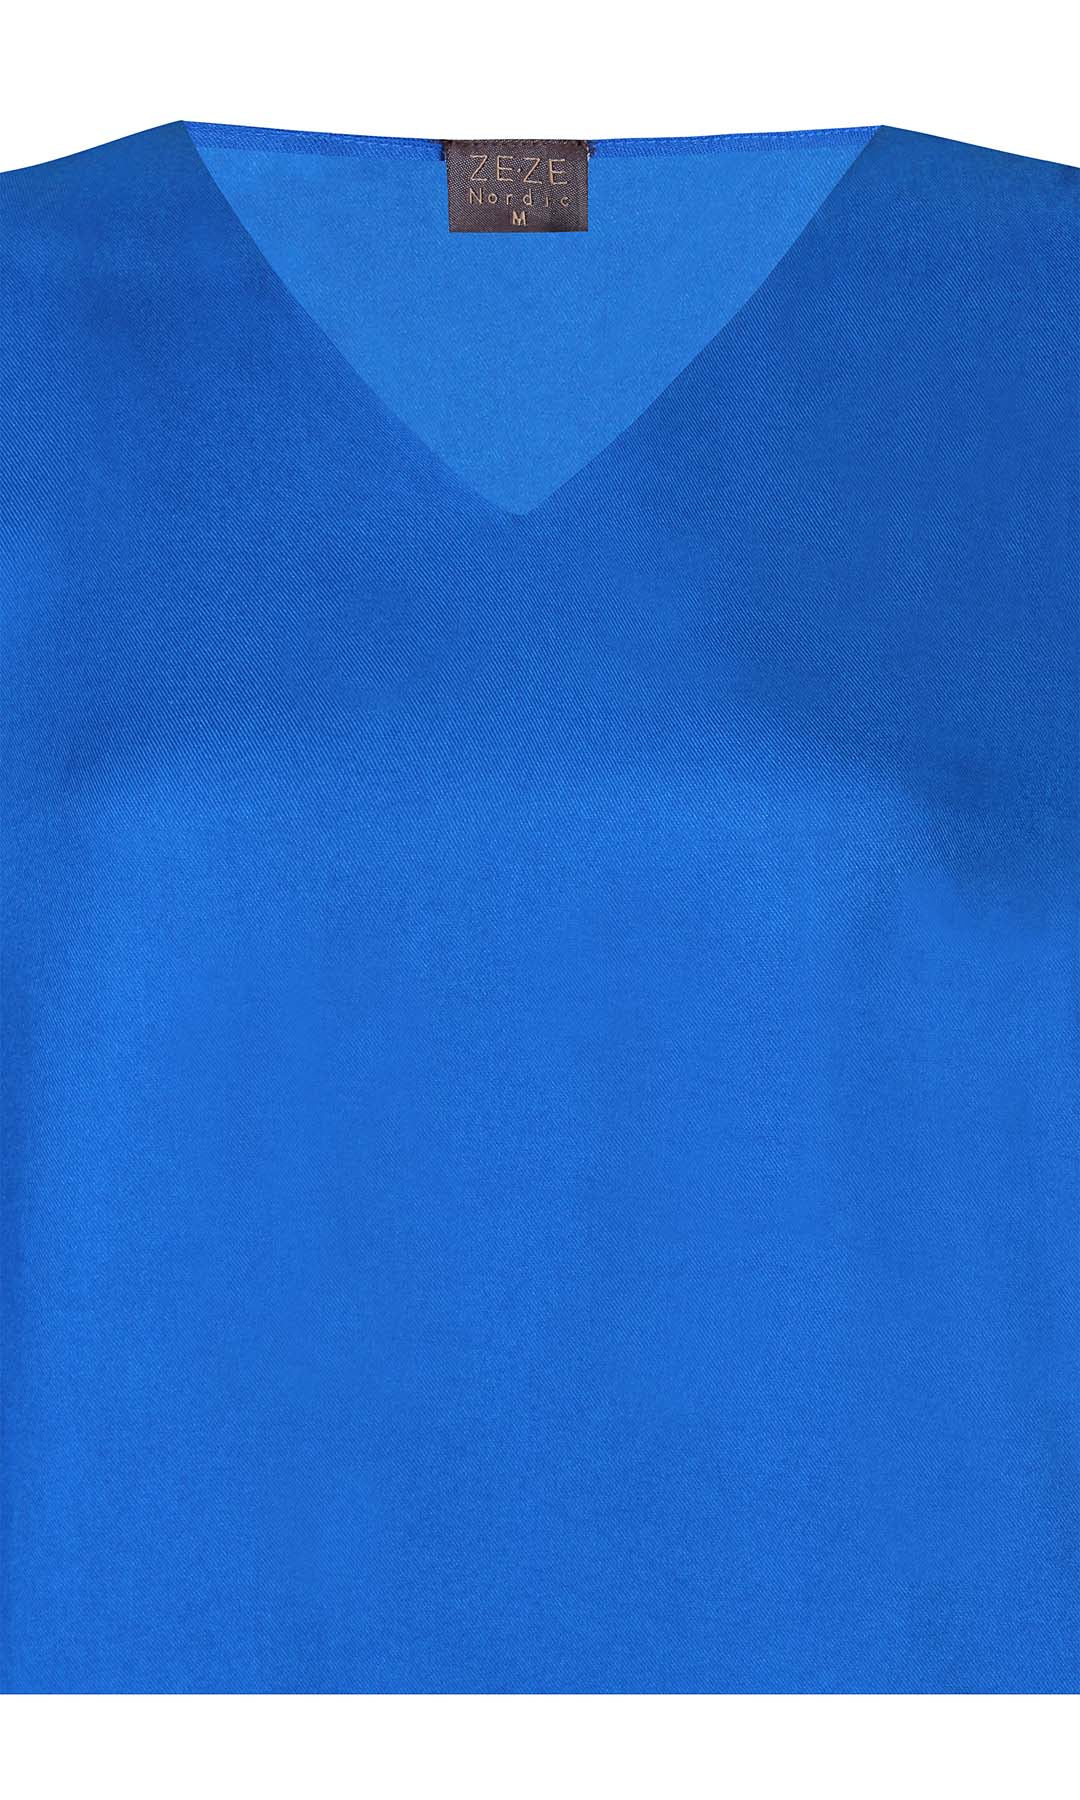 Eja 107 - Bluse - Blå